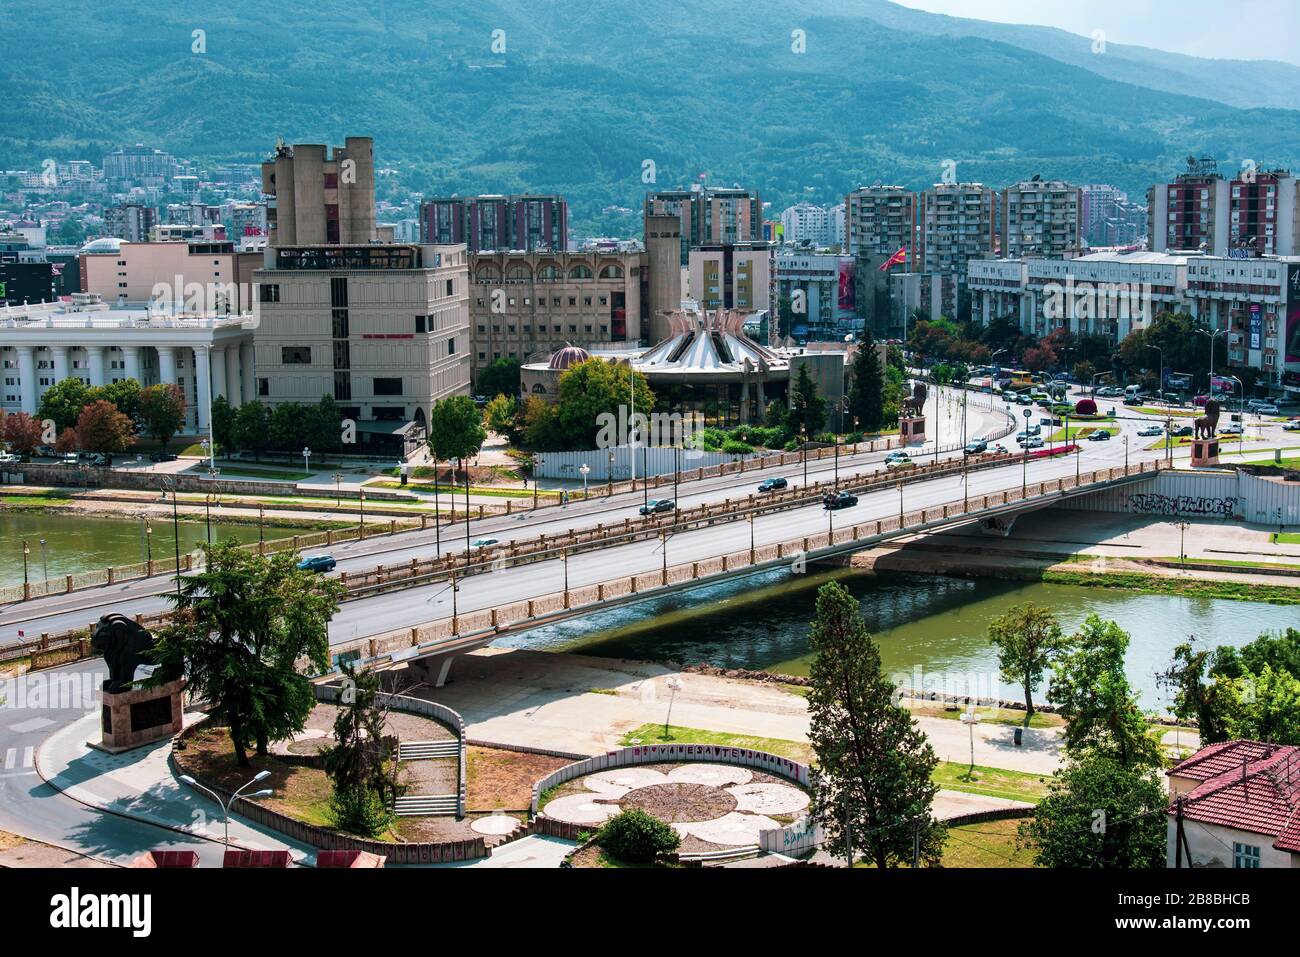 Skopje, Macédoine du Nord - 26 août 2018 : vue du centre-ville de Skopje sur la capitale de la Macédoine du Nord dans le sud-est de l'Europe Banque D'Images